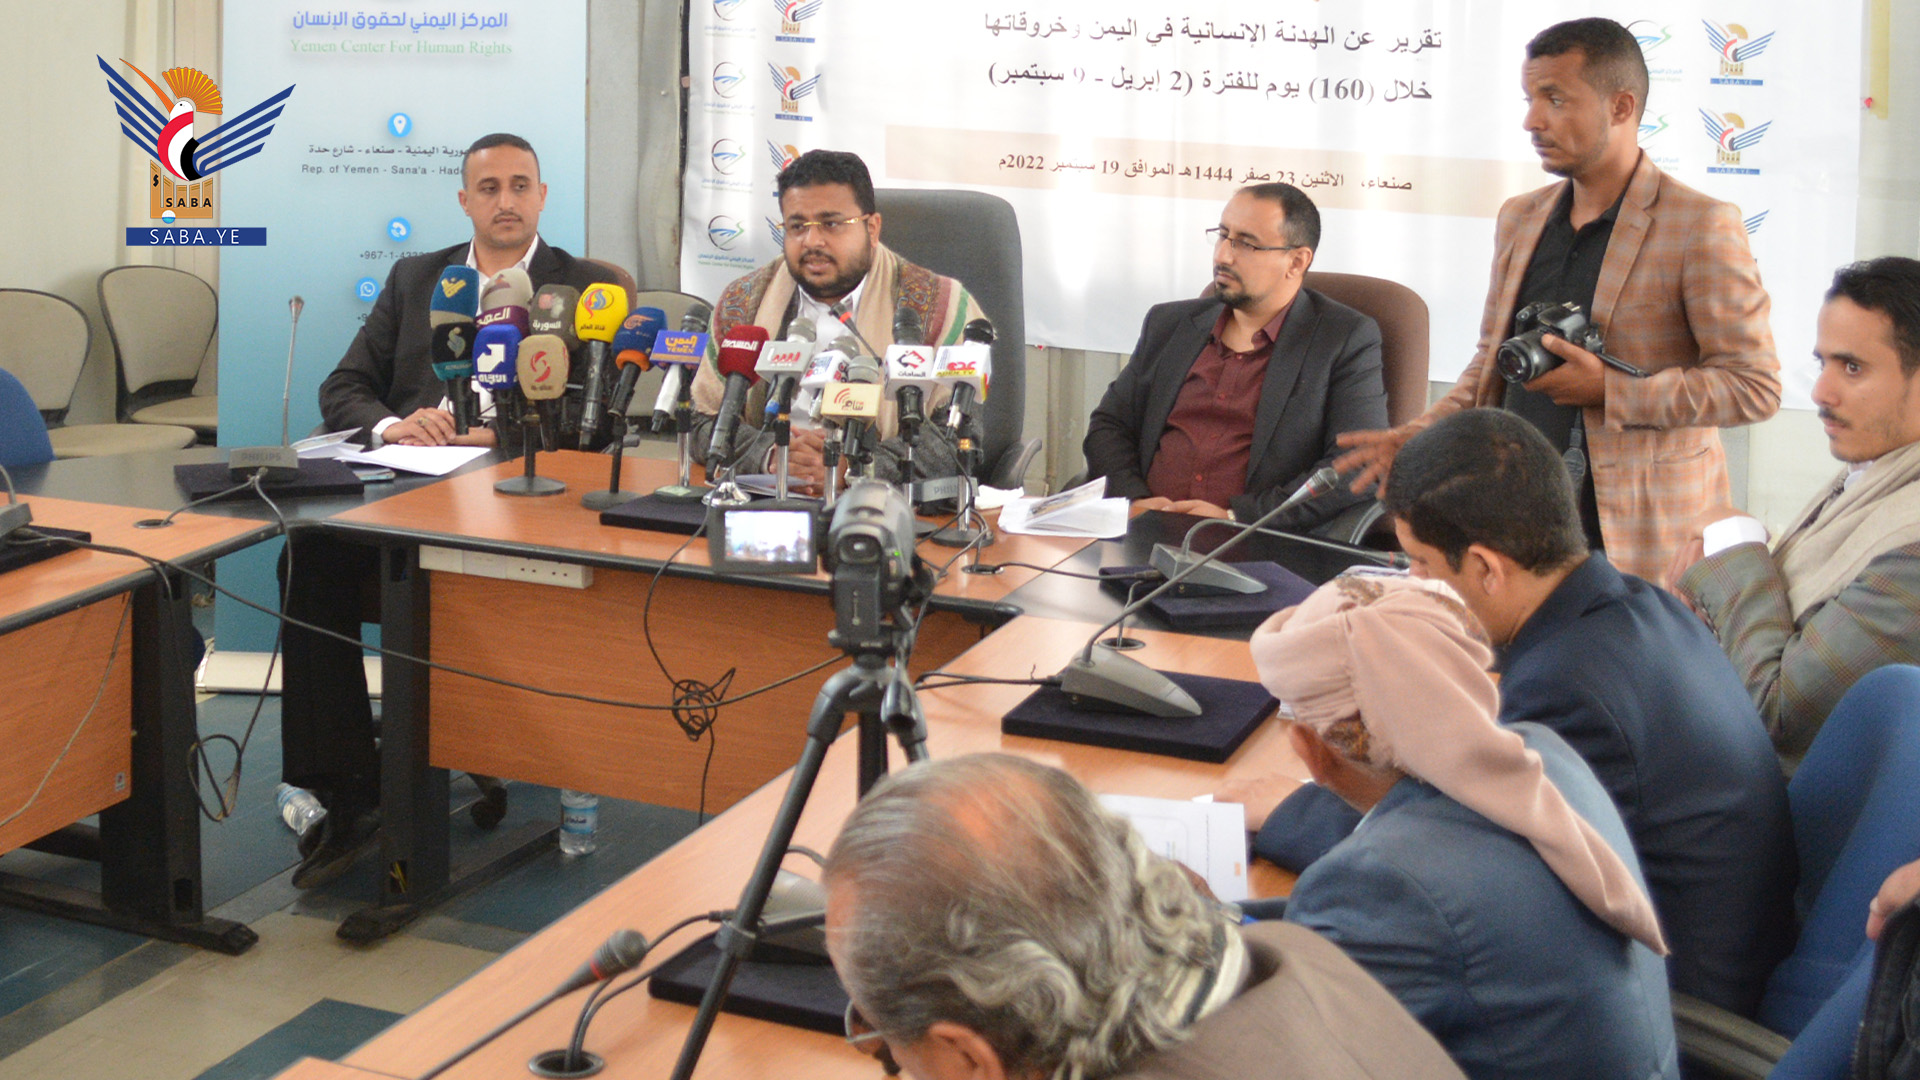 المركز اليمني لحقوق الإنسان ووكالة سبأ ينظمان مؤتمراً صحفياً حول الهدنة المزعومة